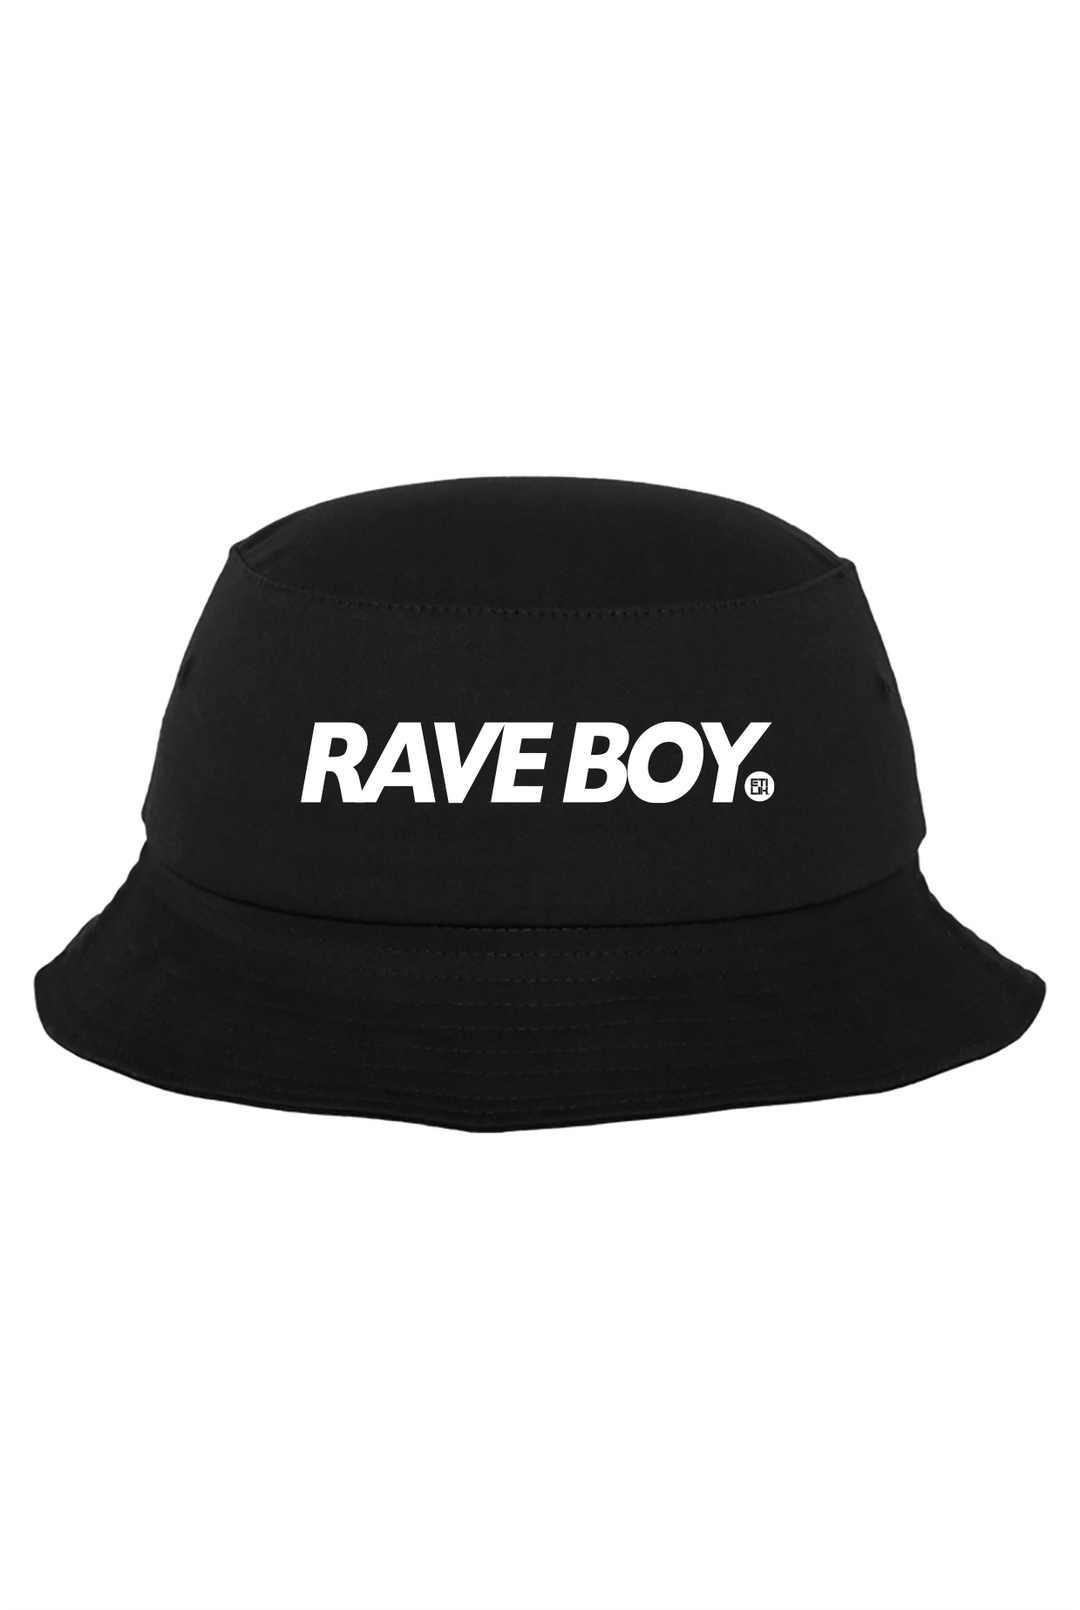 Rave Boy - Bob